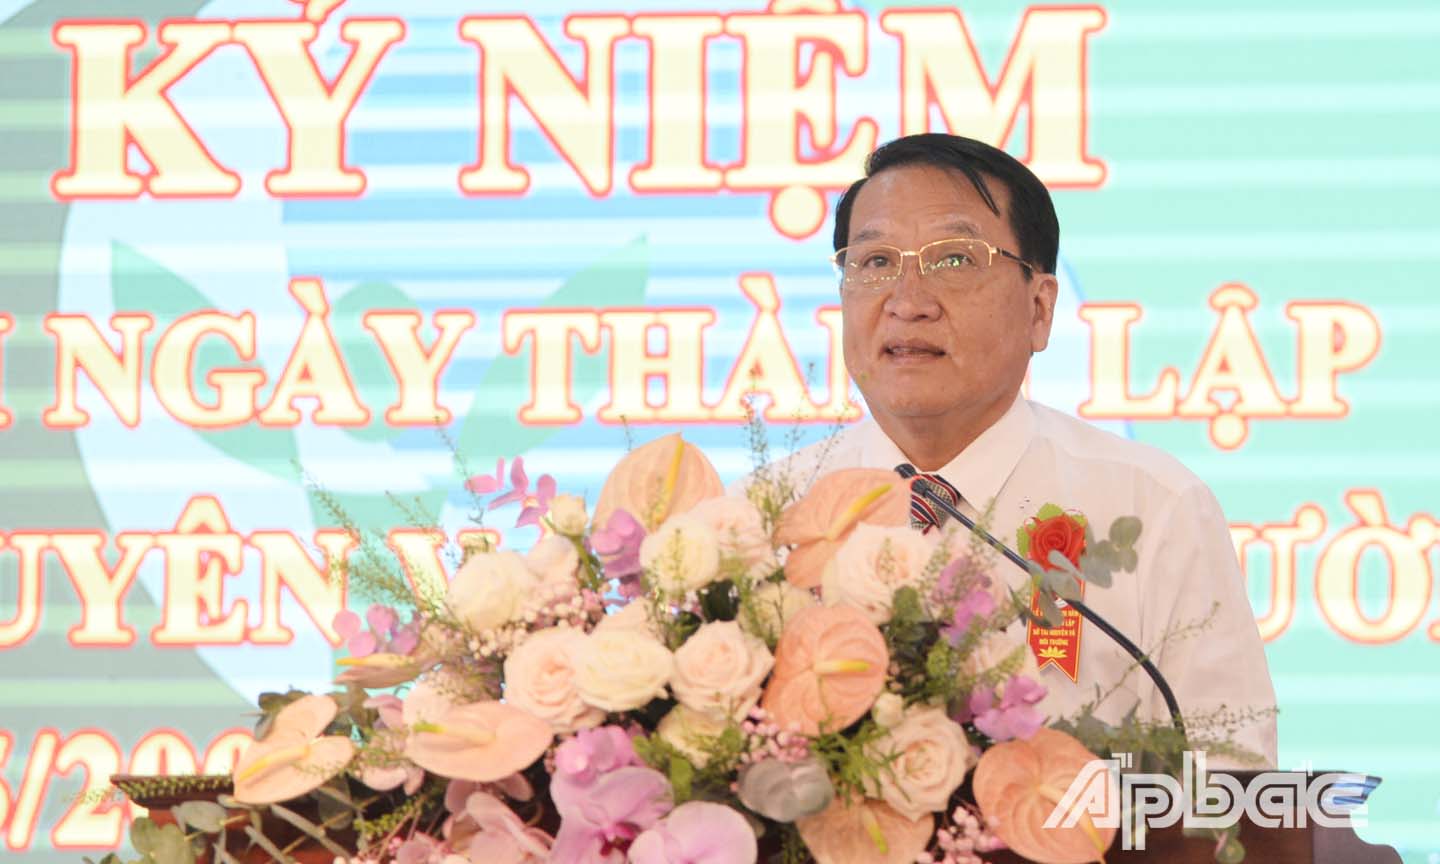 Đồng chí Phạm Văn Trọng phát biểu tại Hội nghị.